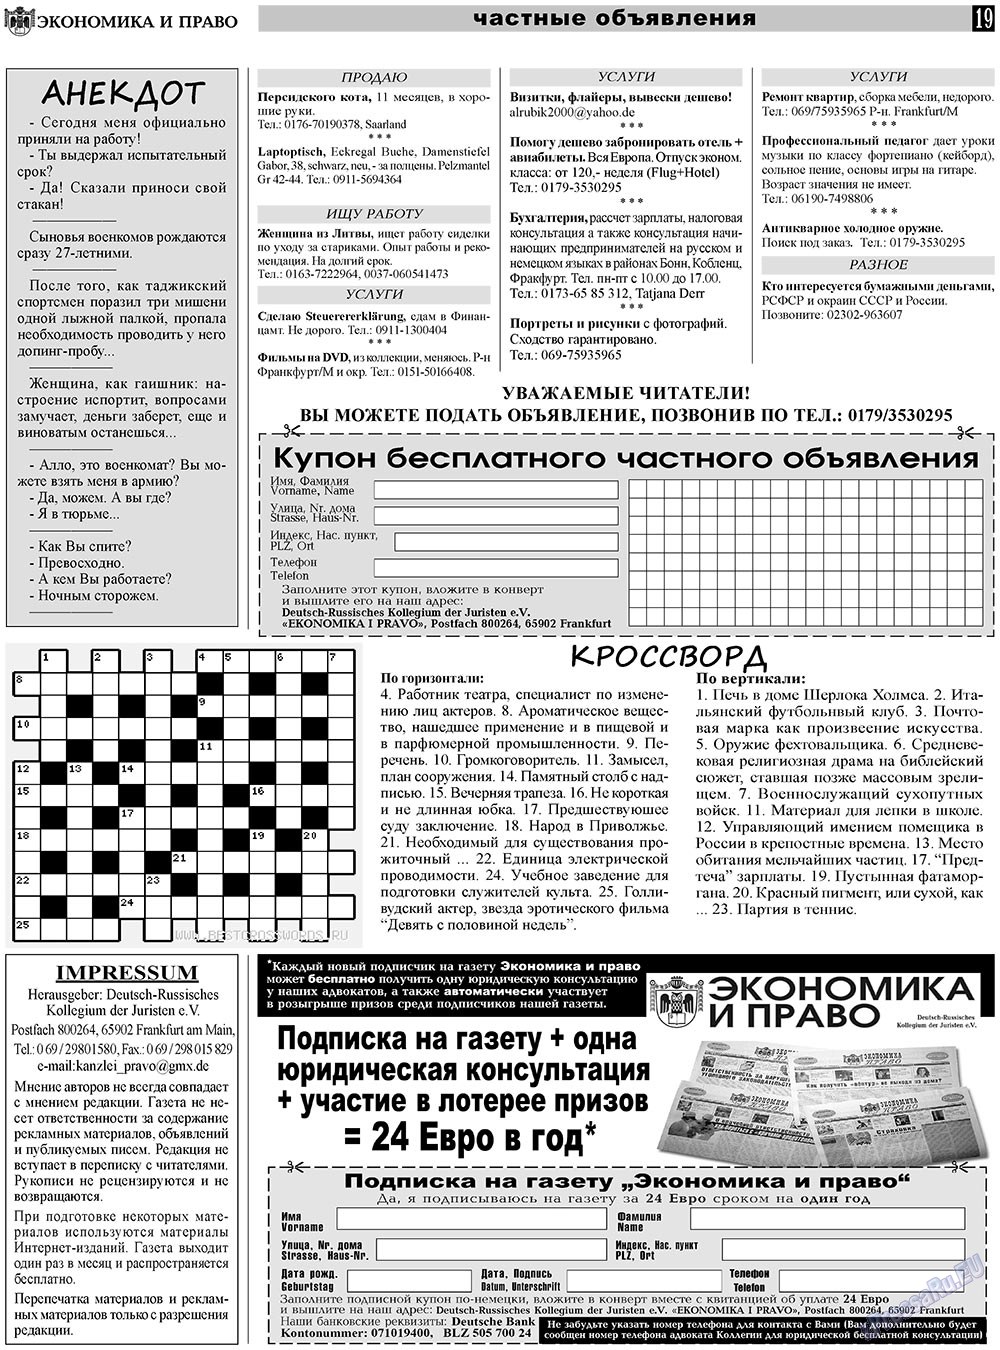 Экономика и право, газета. 2011 №4 стр.19